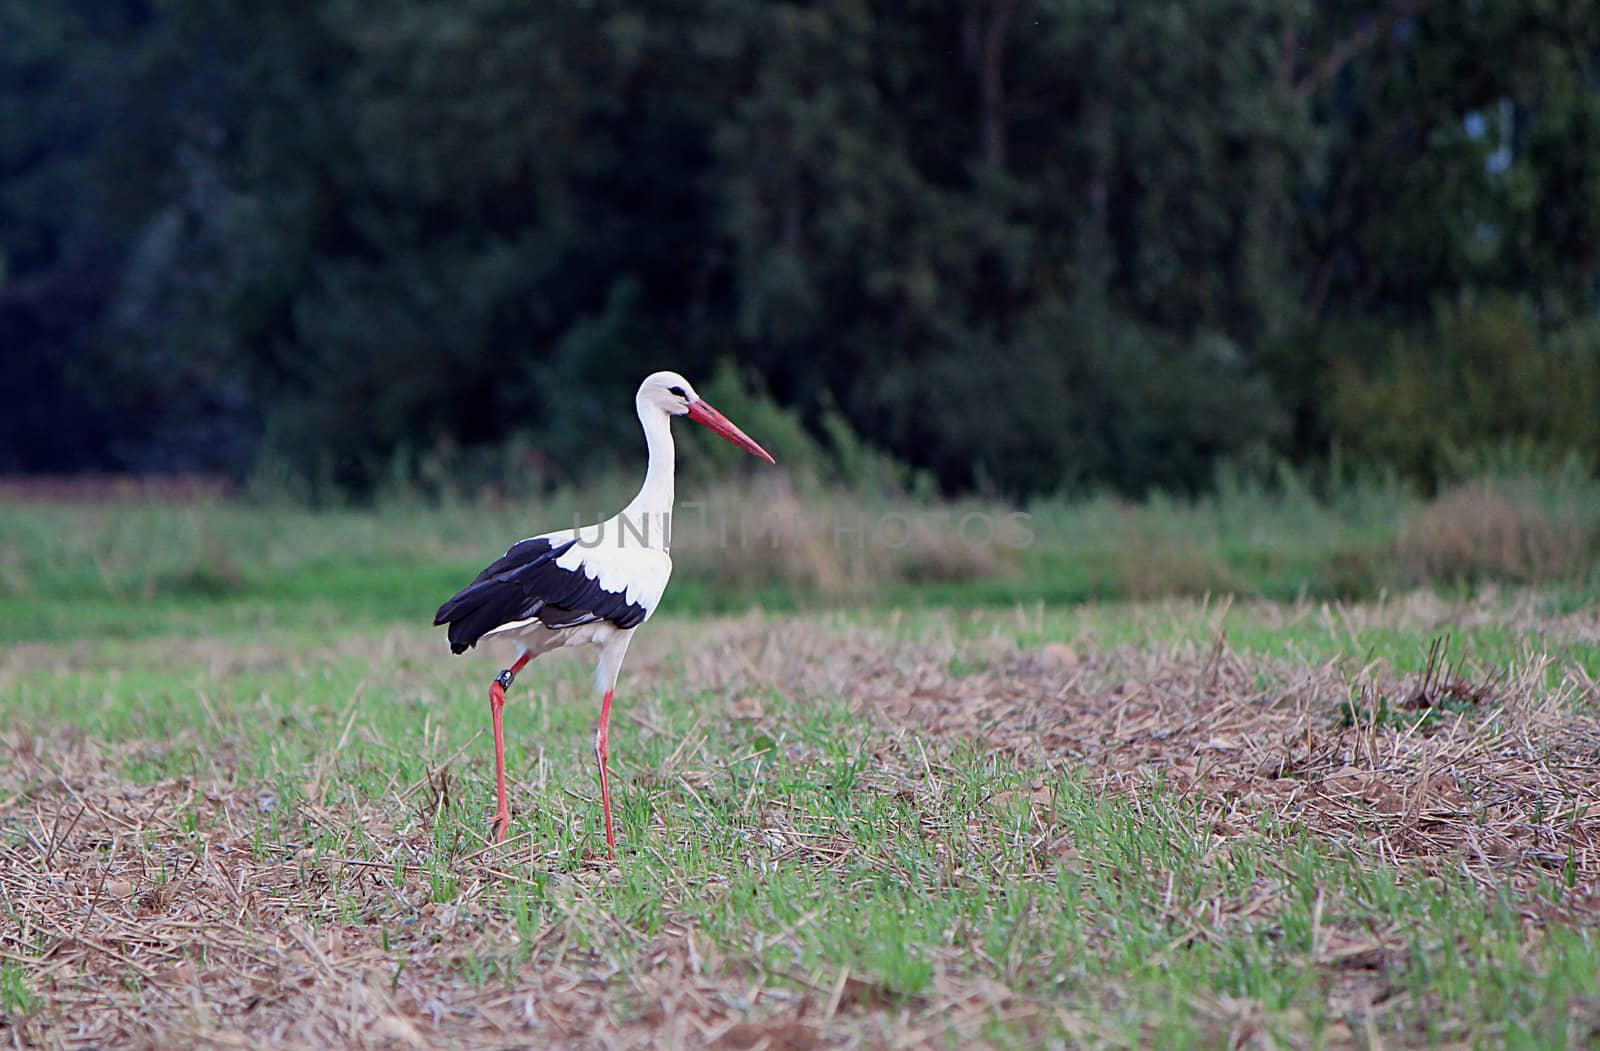 Stork walking in a field alone